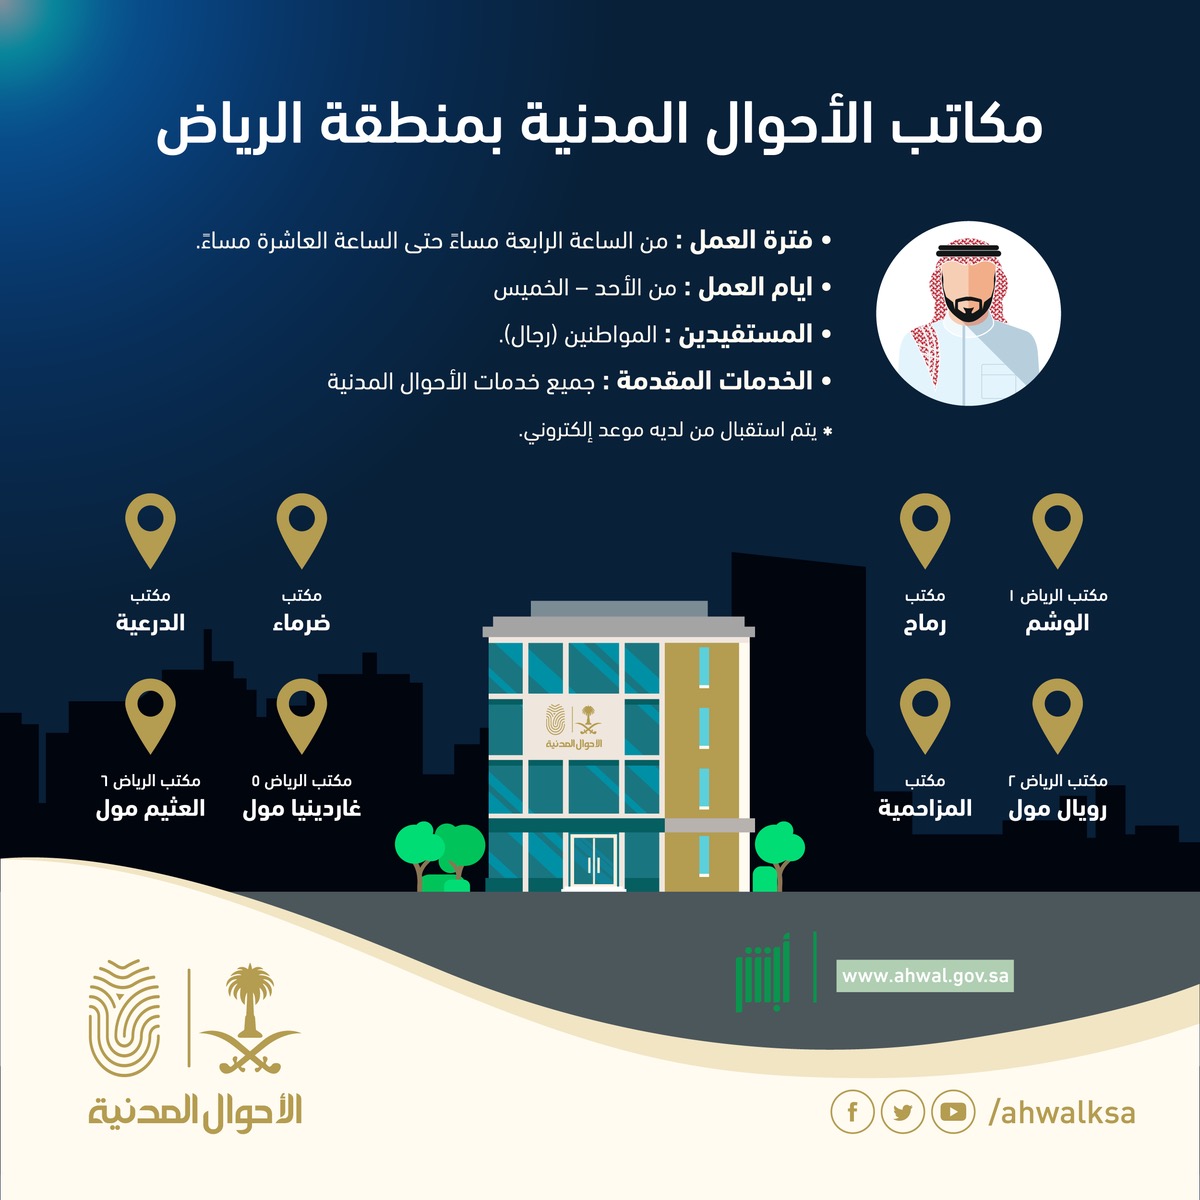 مكاتب الأحوال المدنية تستقبل المواطنين مساءً في الرياض